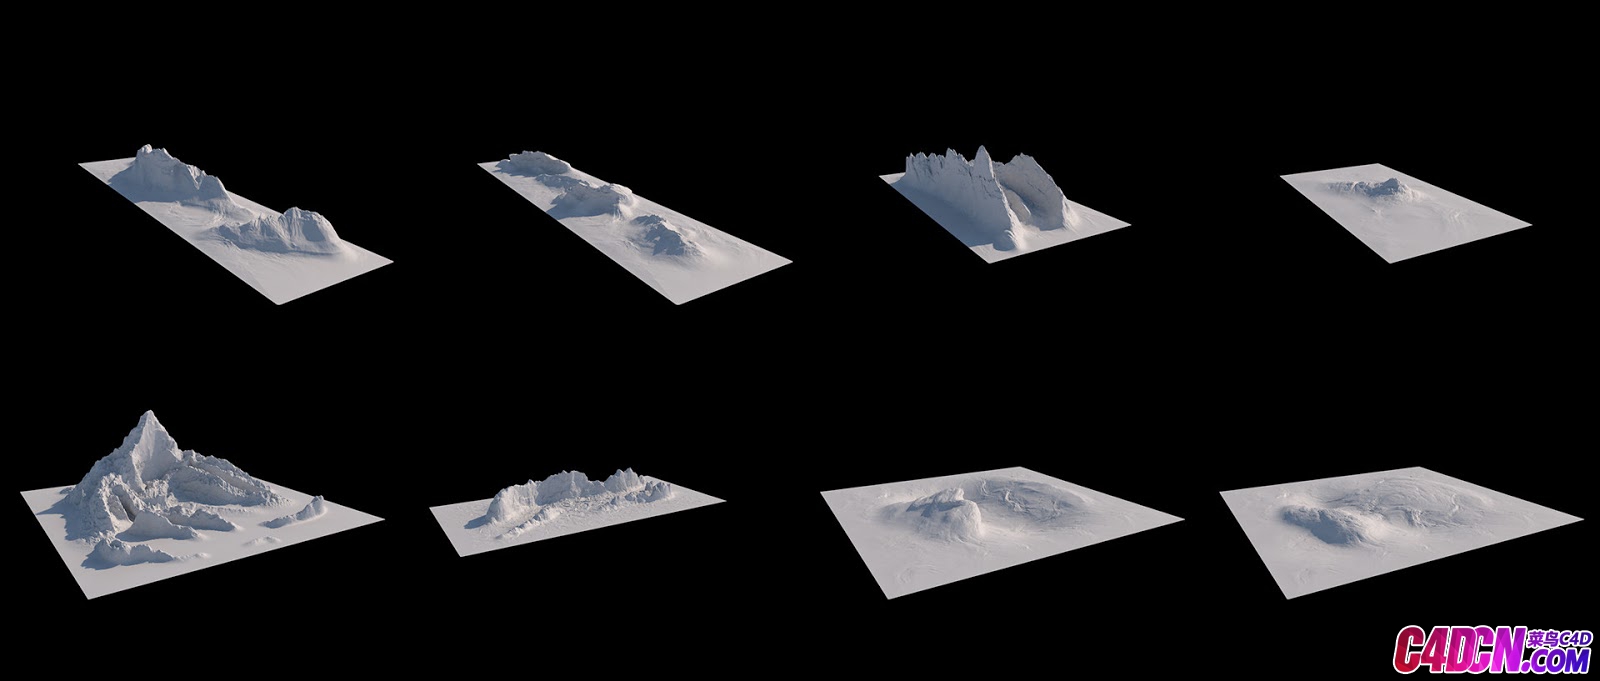 22 Detailed Mountain Packs For Cinema 4D 04.jpg